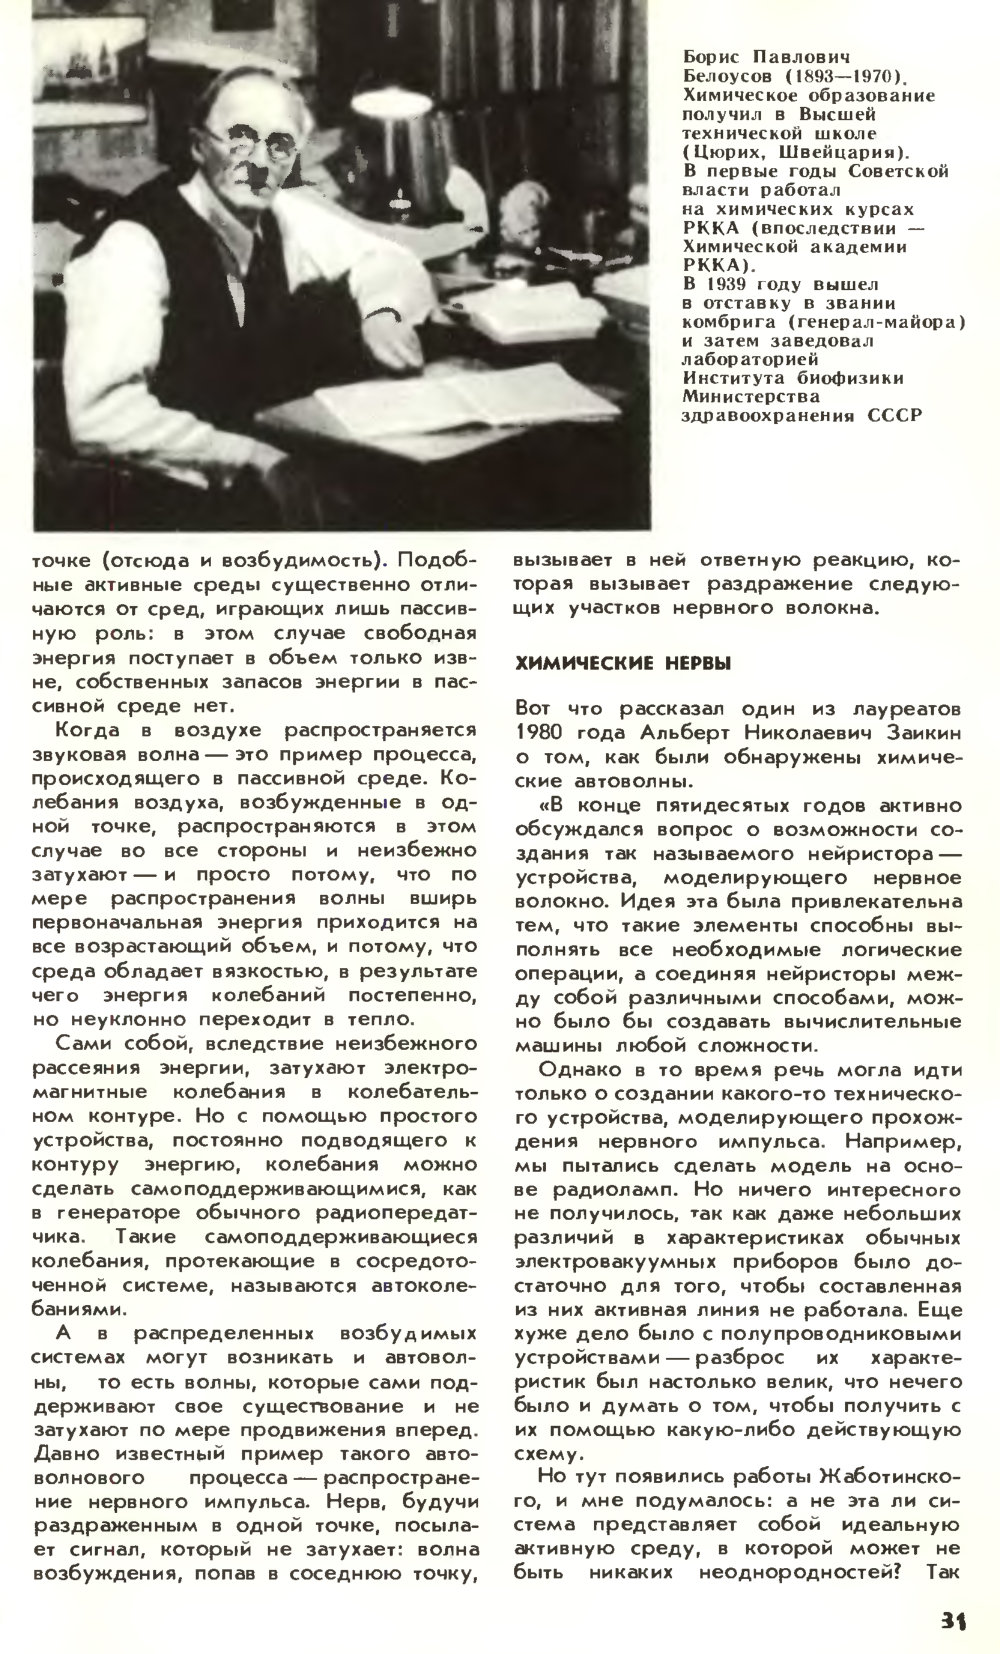 В мире автоволн. М. Ларин. Химия и жизнь, 1980, №11, с.30-33. Фотокопия №2